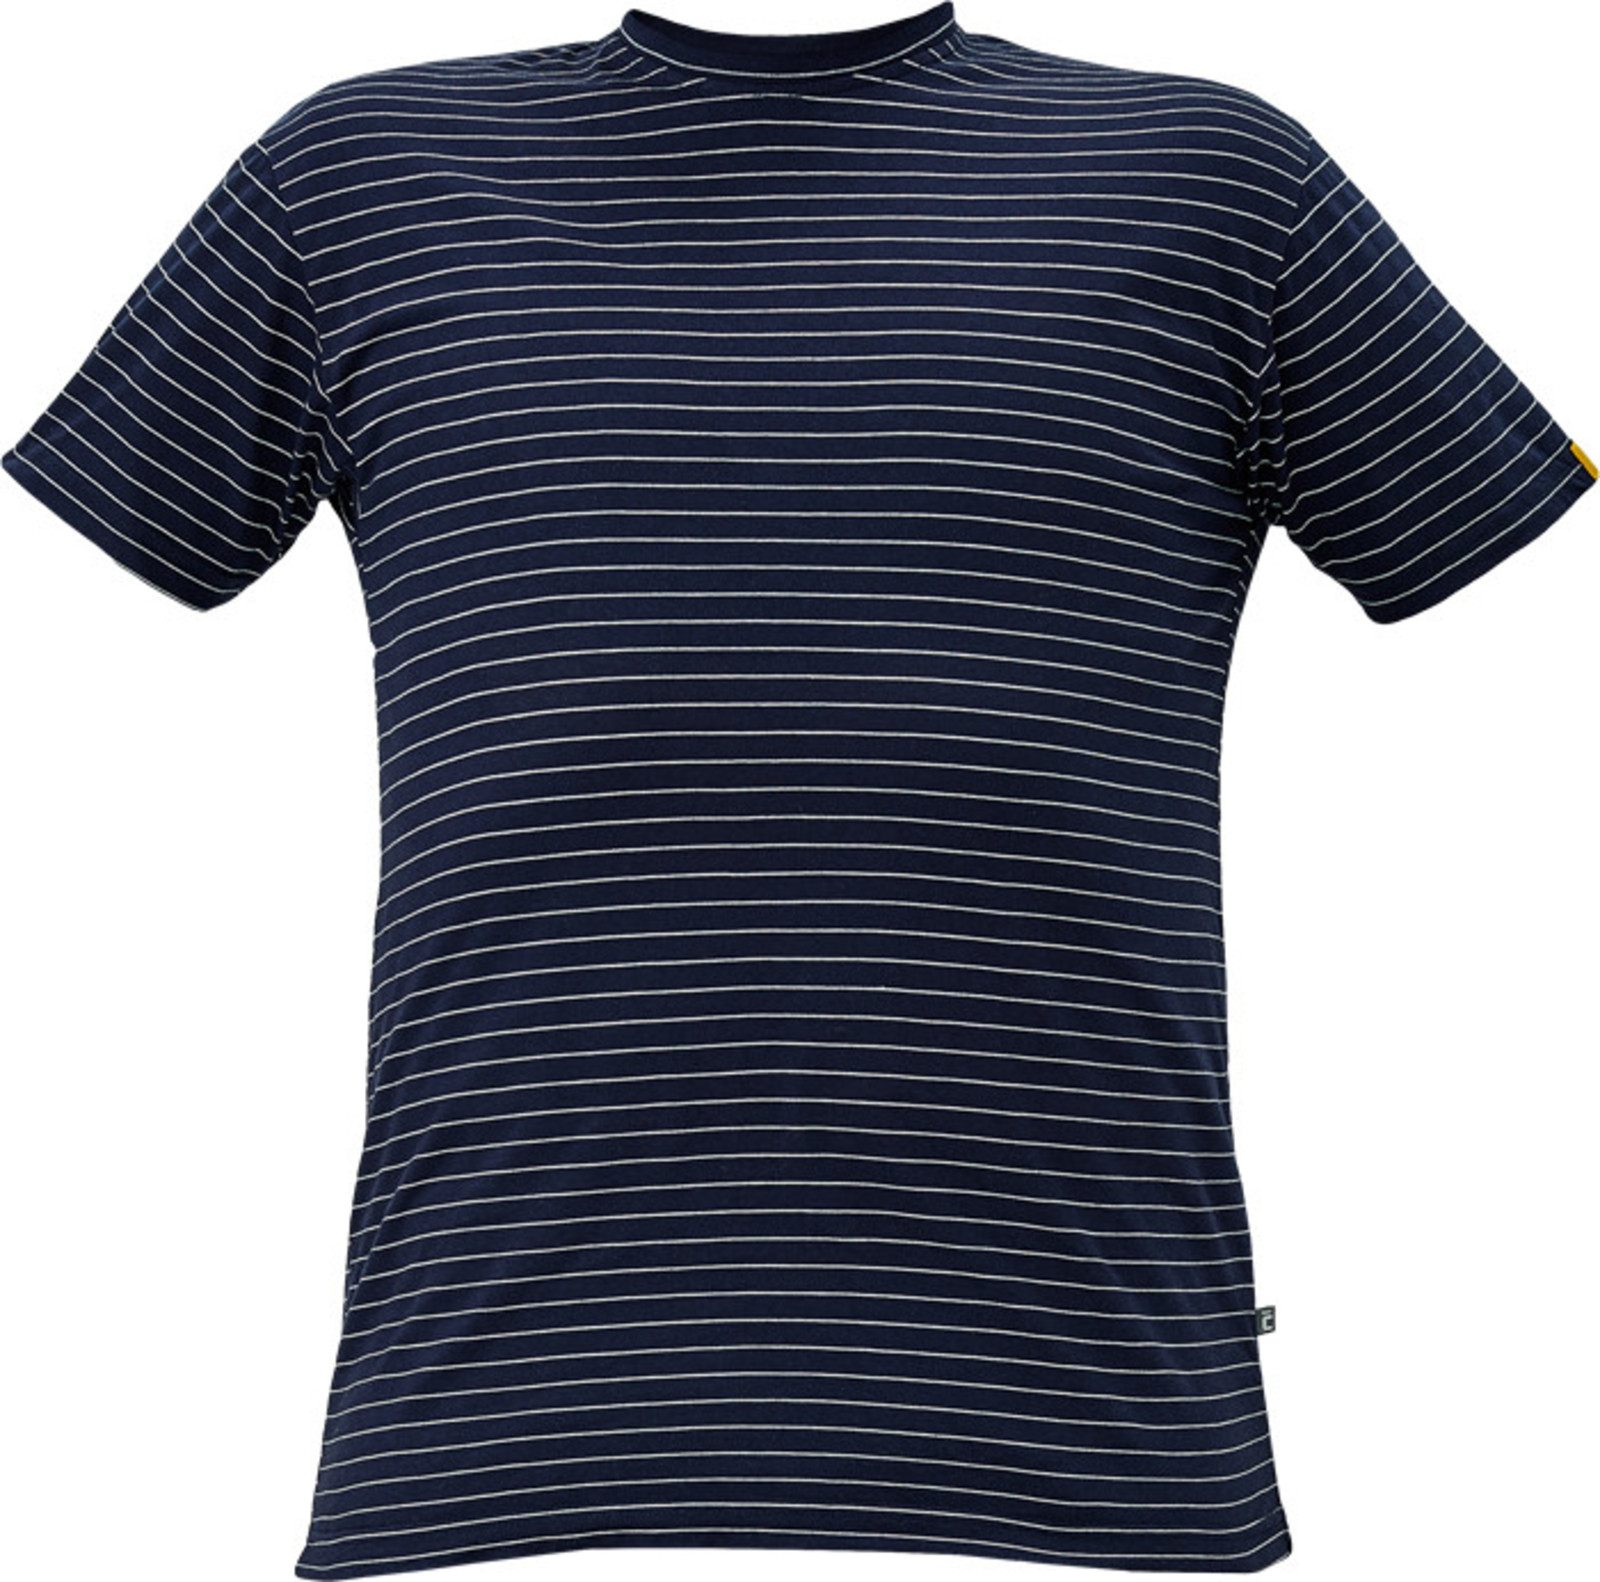 Antistatické ESD tričko Cerva Noyo - veľkosť: 3XL, farba: navy